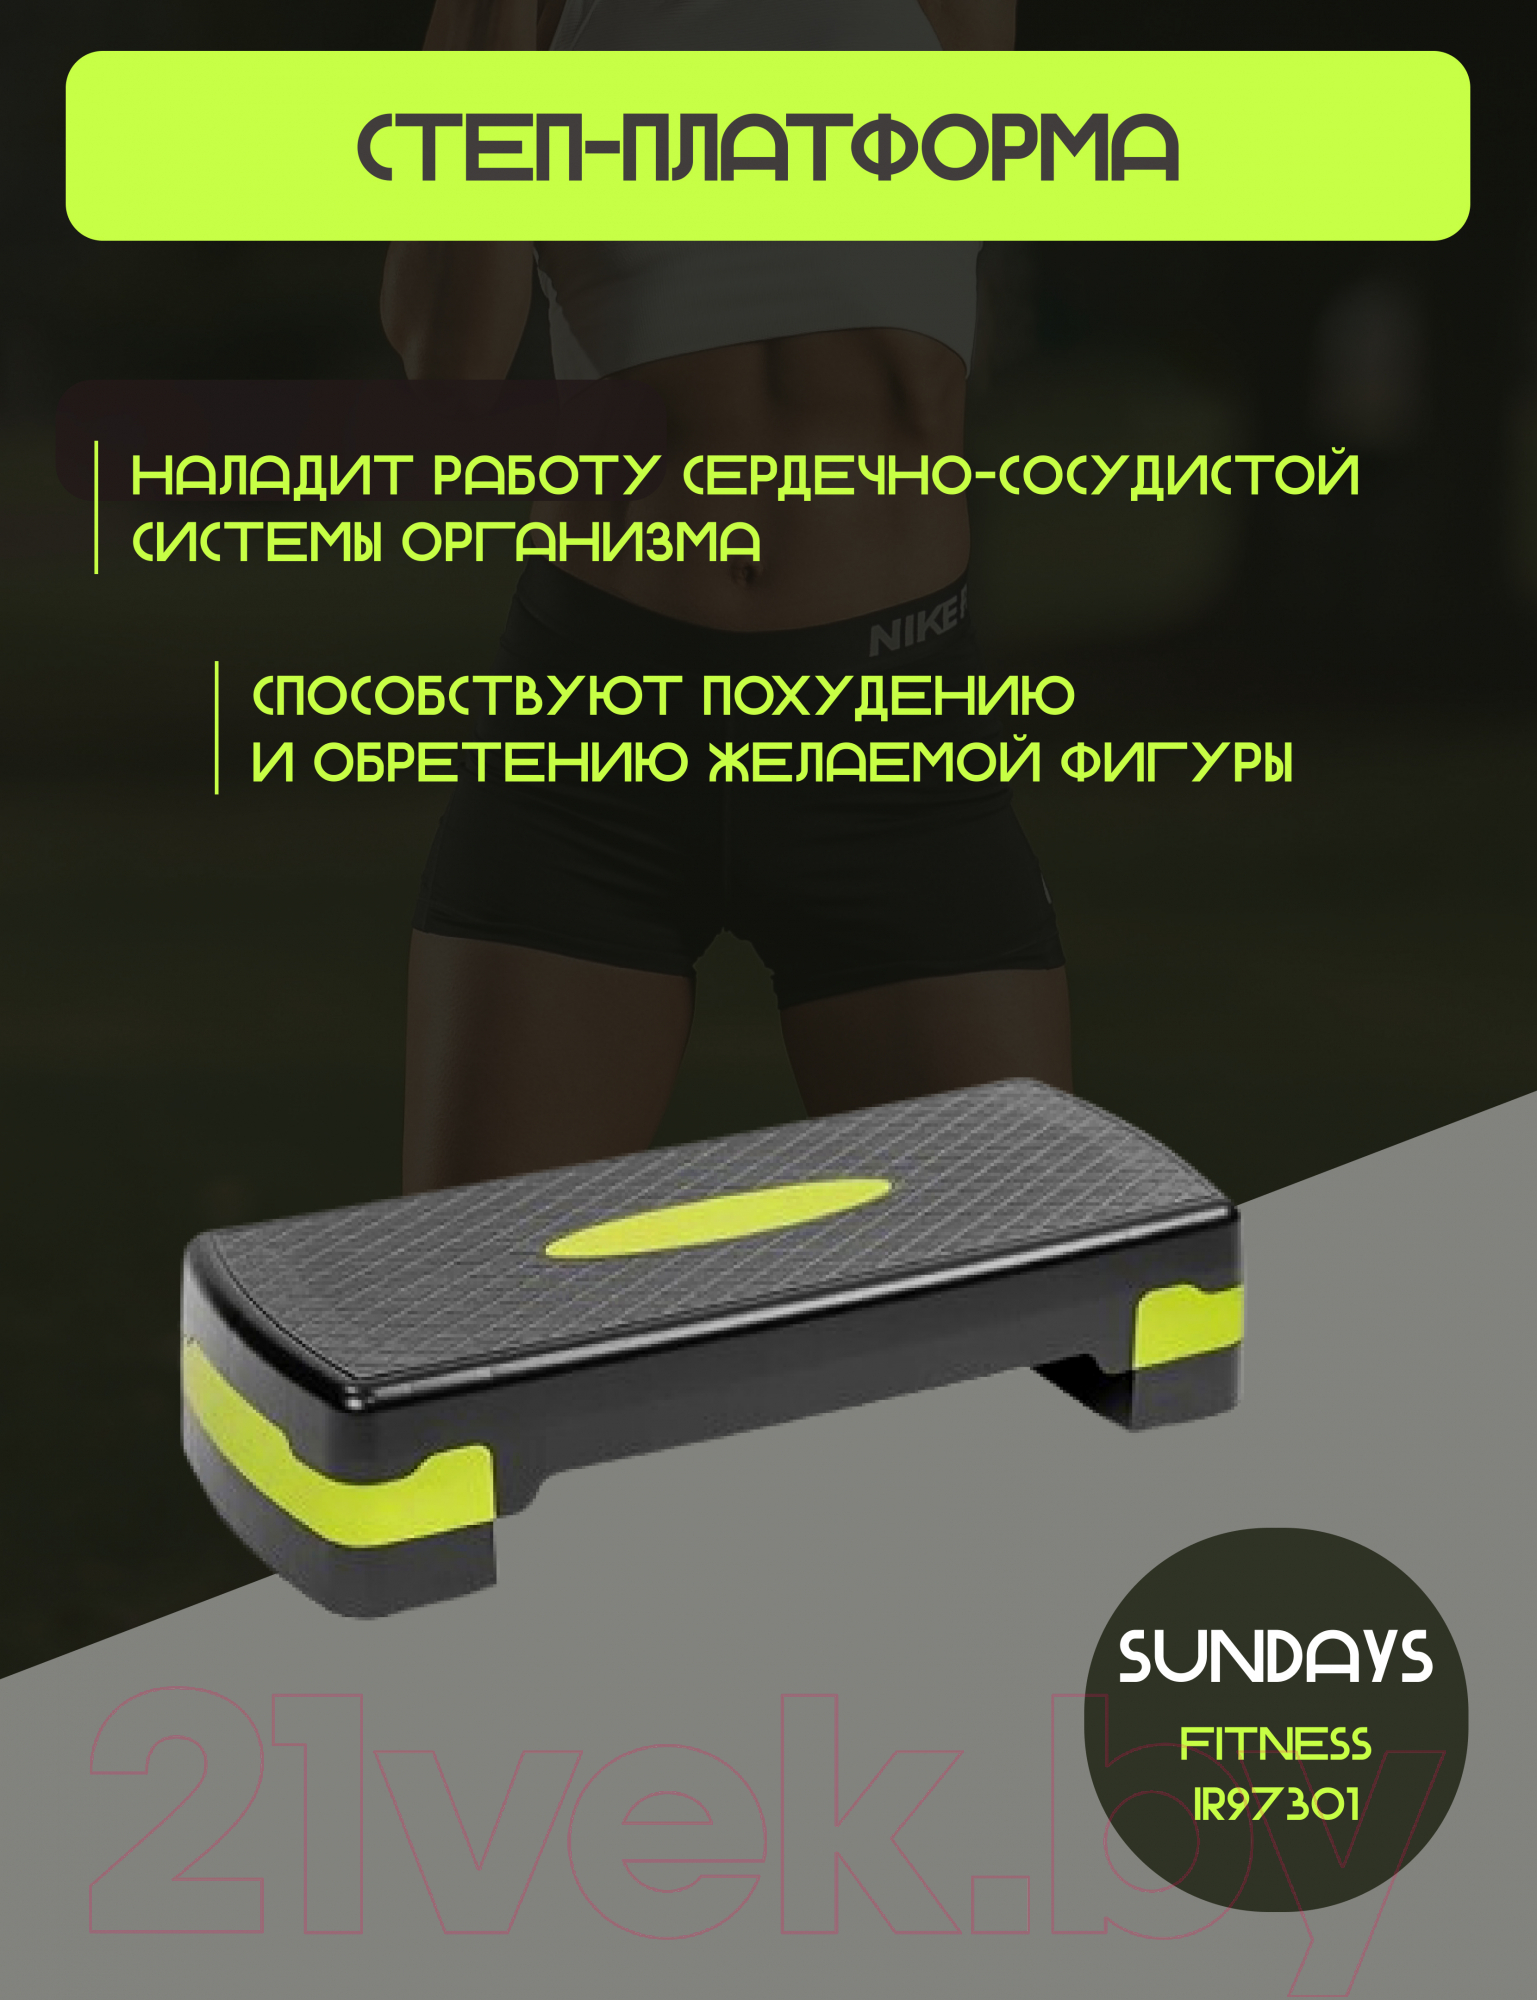 Степ-платформа Sundays Fitness IR97301